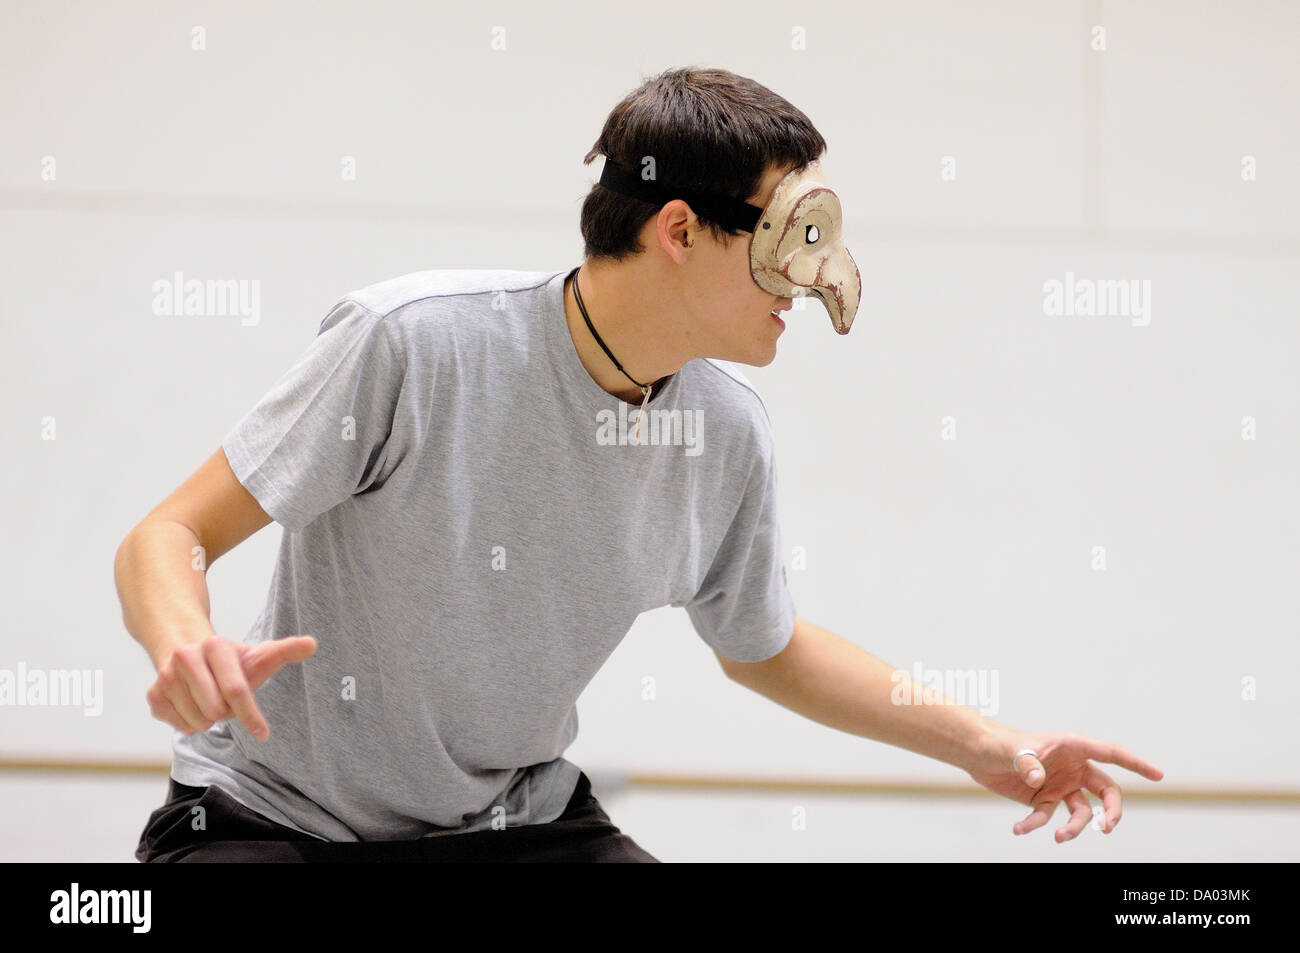 Barcellona - MAR 3: Un attore con una maschera svolge Commedia dell'arte il 3 marzo 2011 a Barcellona, Spagna. Foto Stock